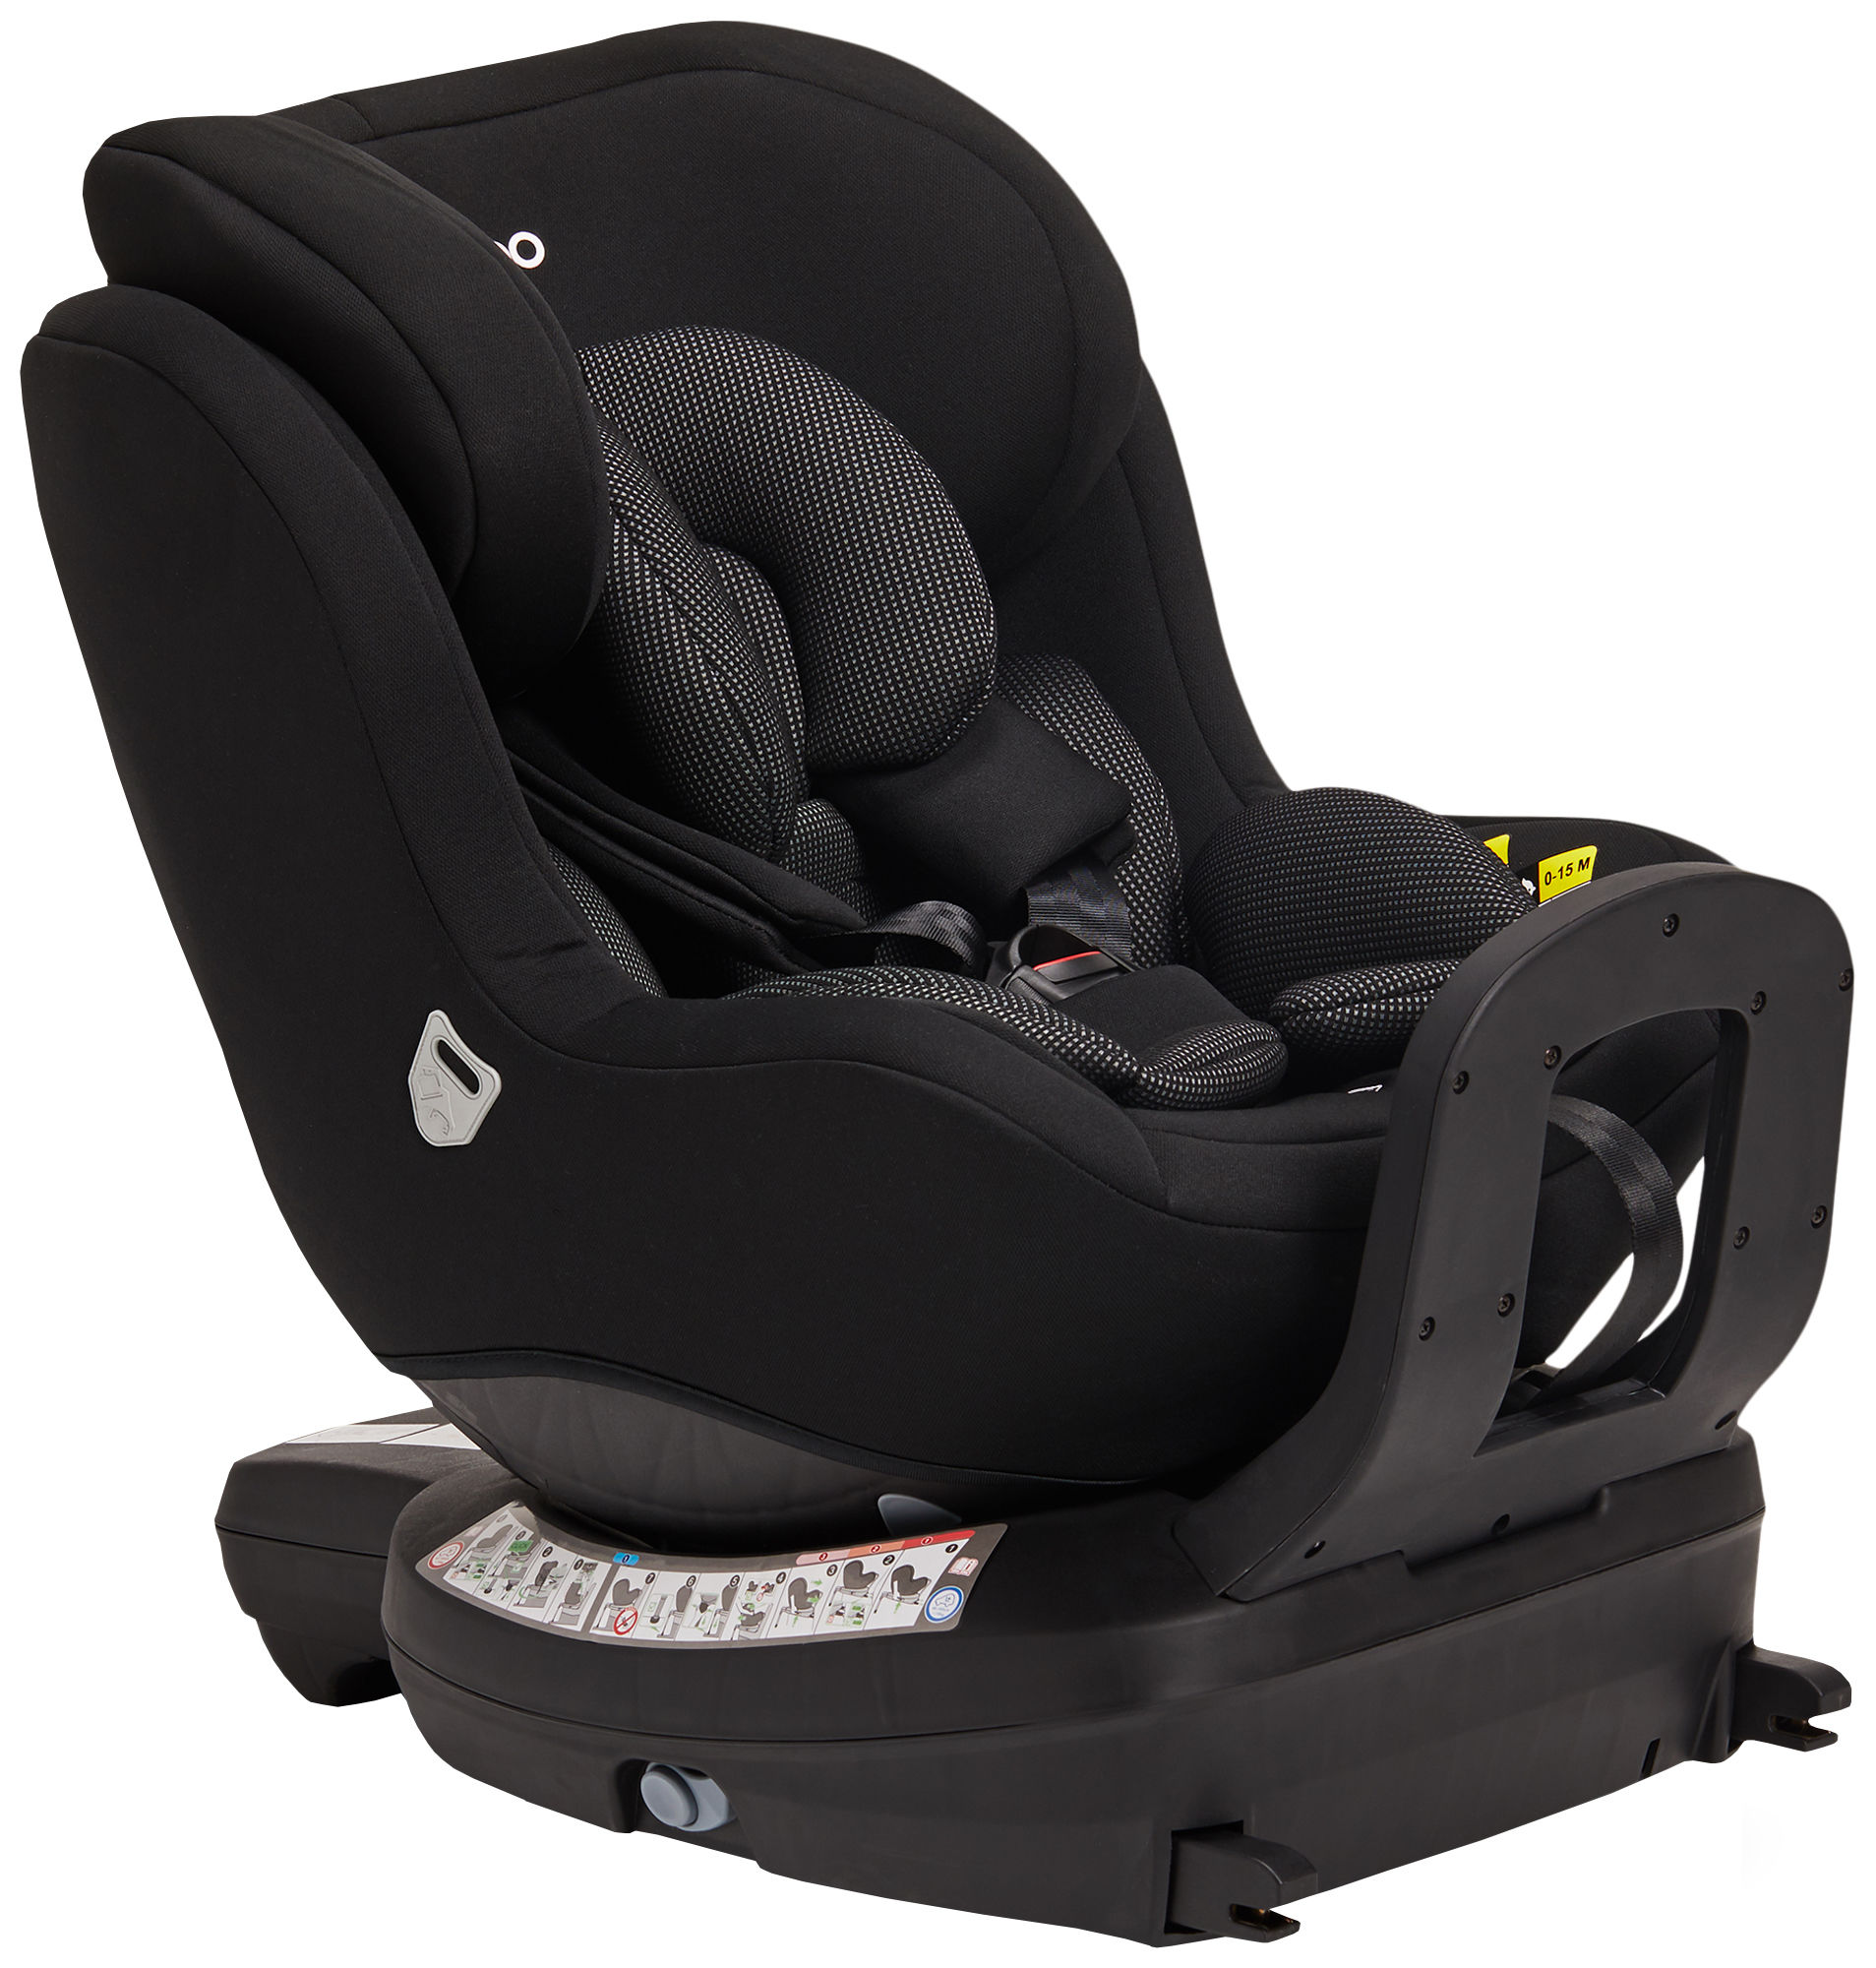 Bakåtvänd bilbarnstol [2021] Säkerhet i bilen för barn mellan 7 